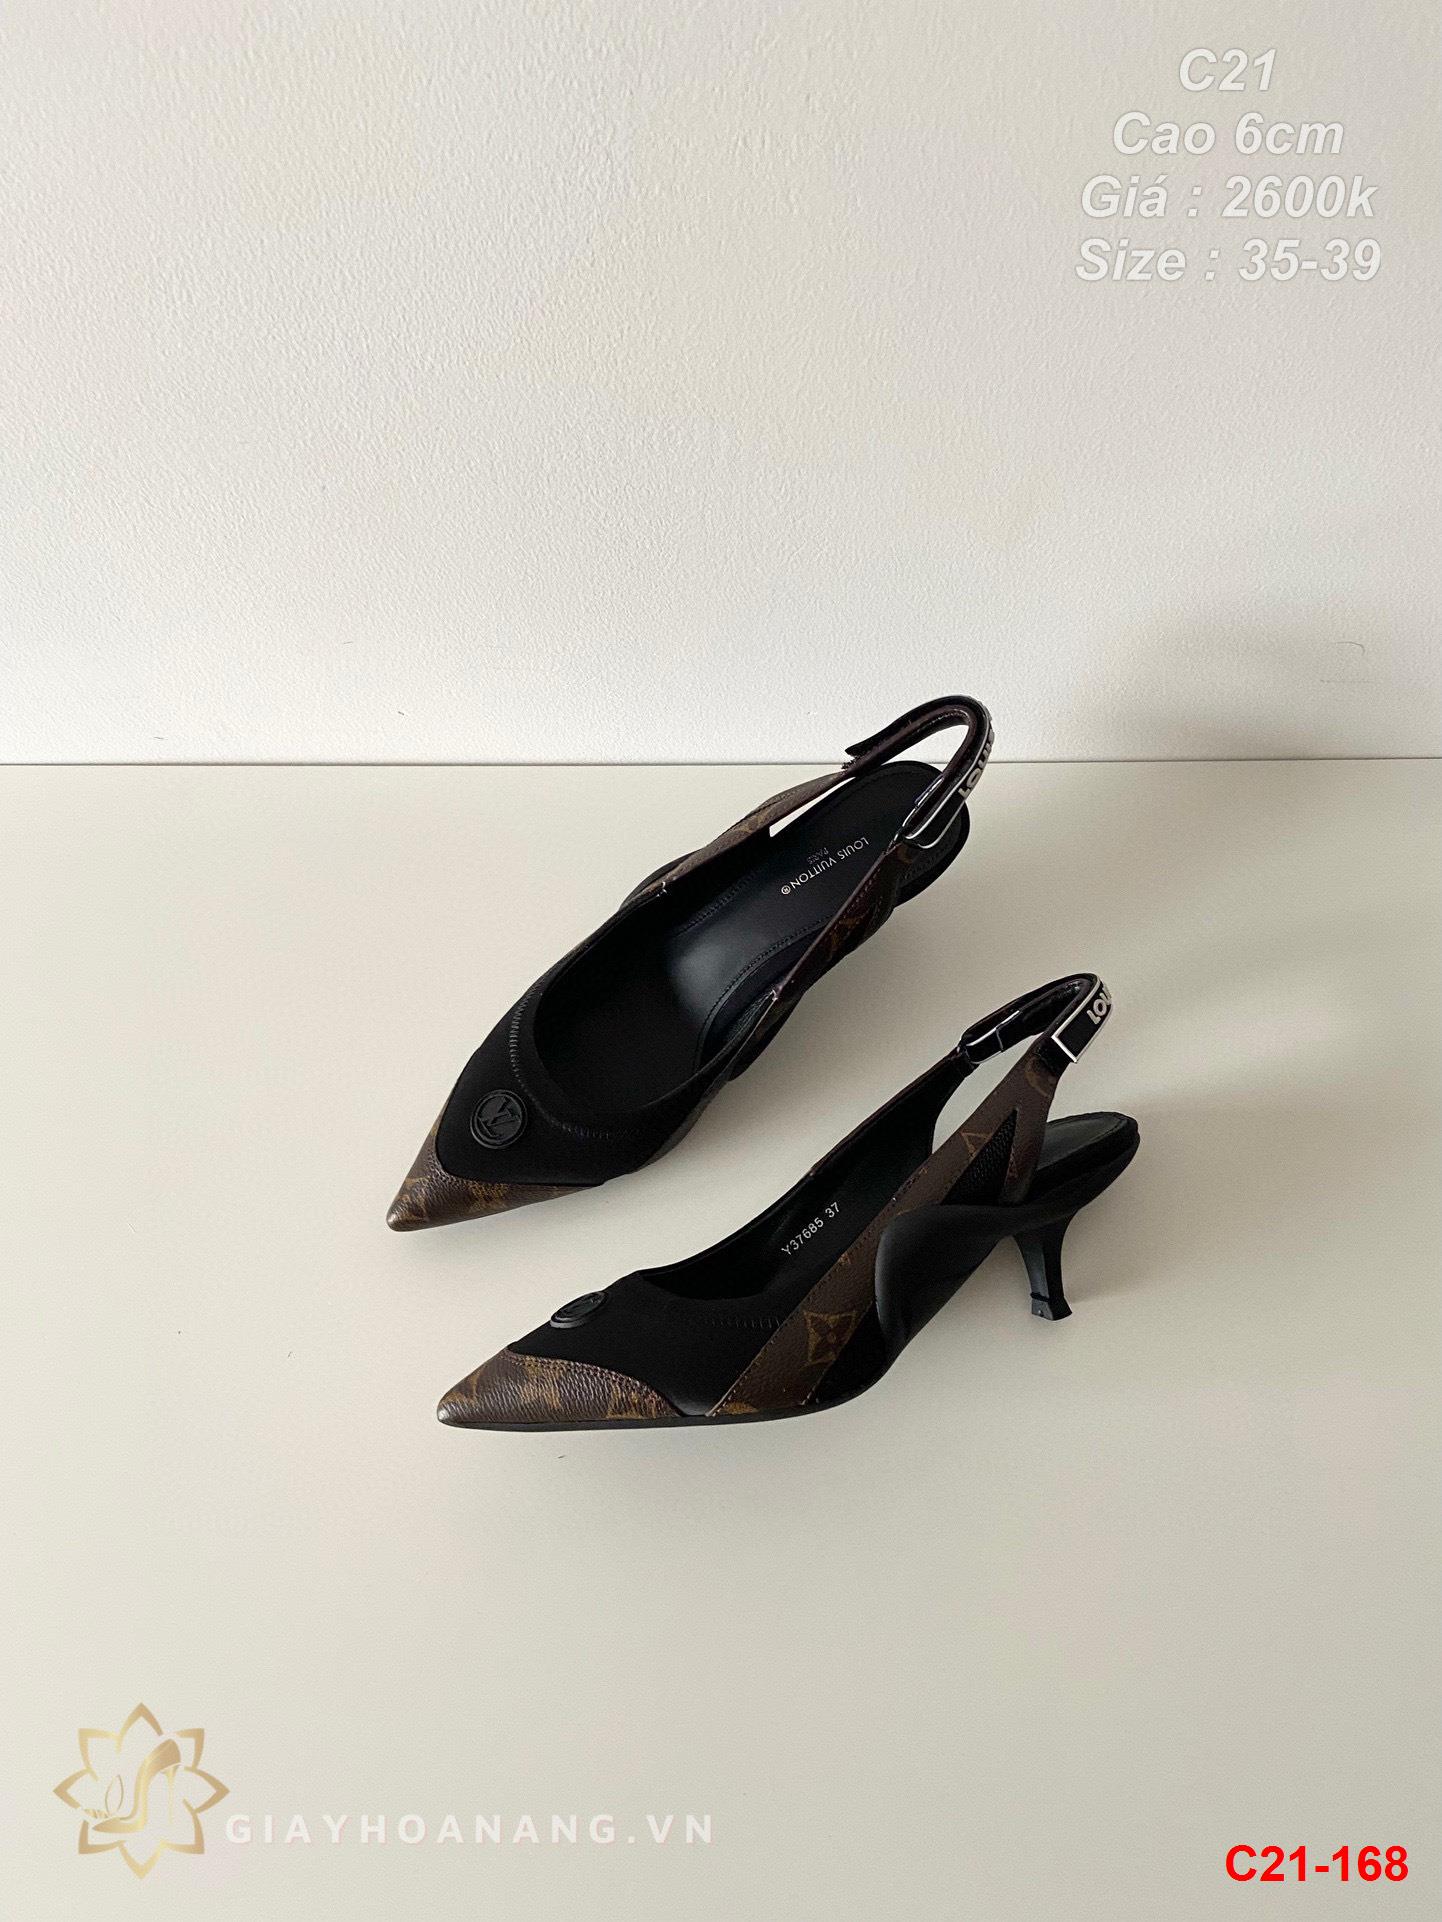 C21-168 Louis Vuitton sandal cao 6cm siêu cấp